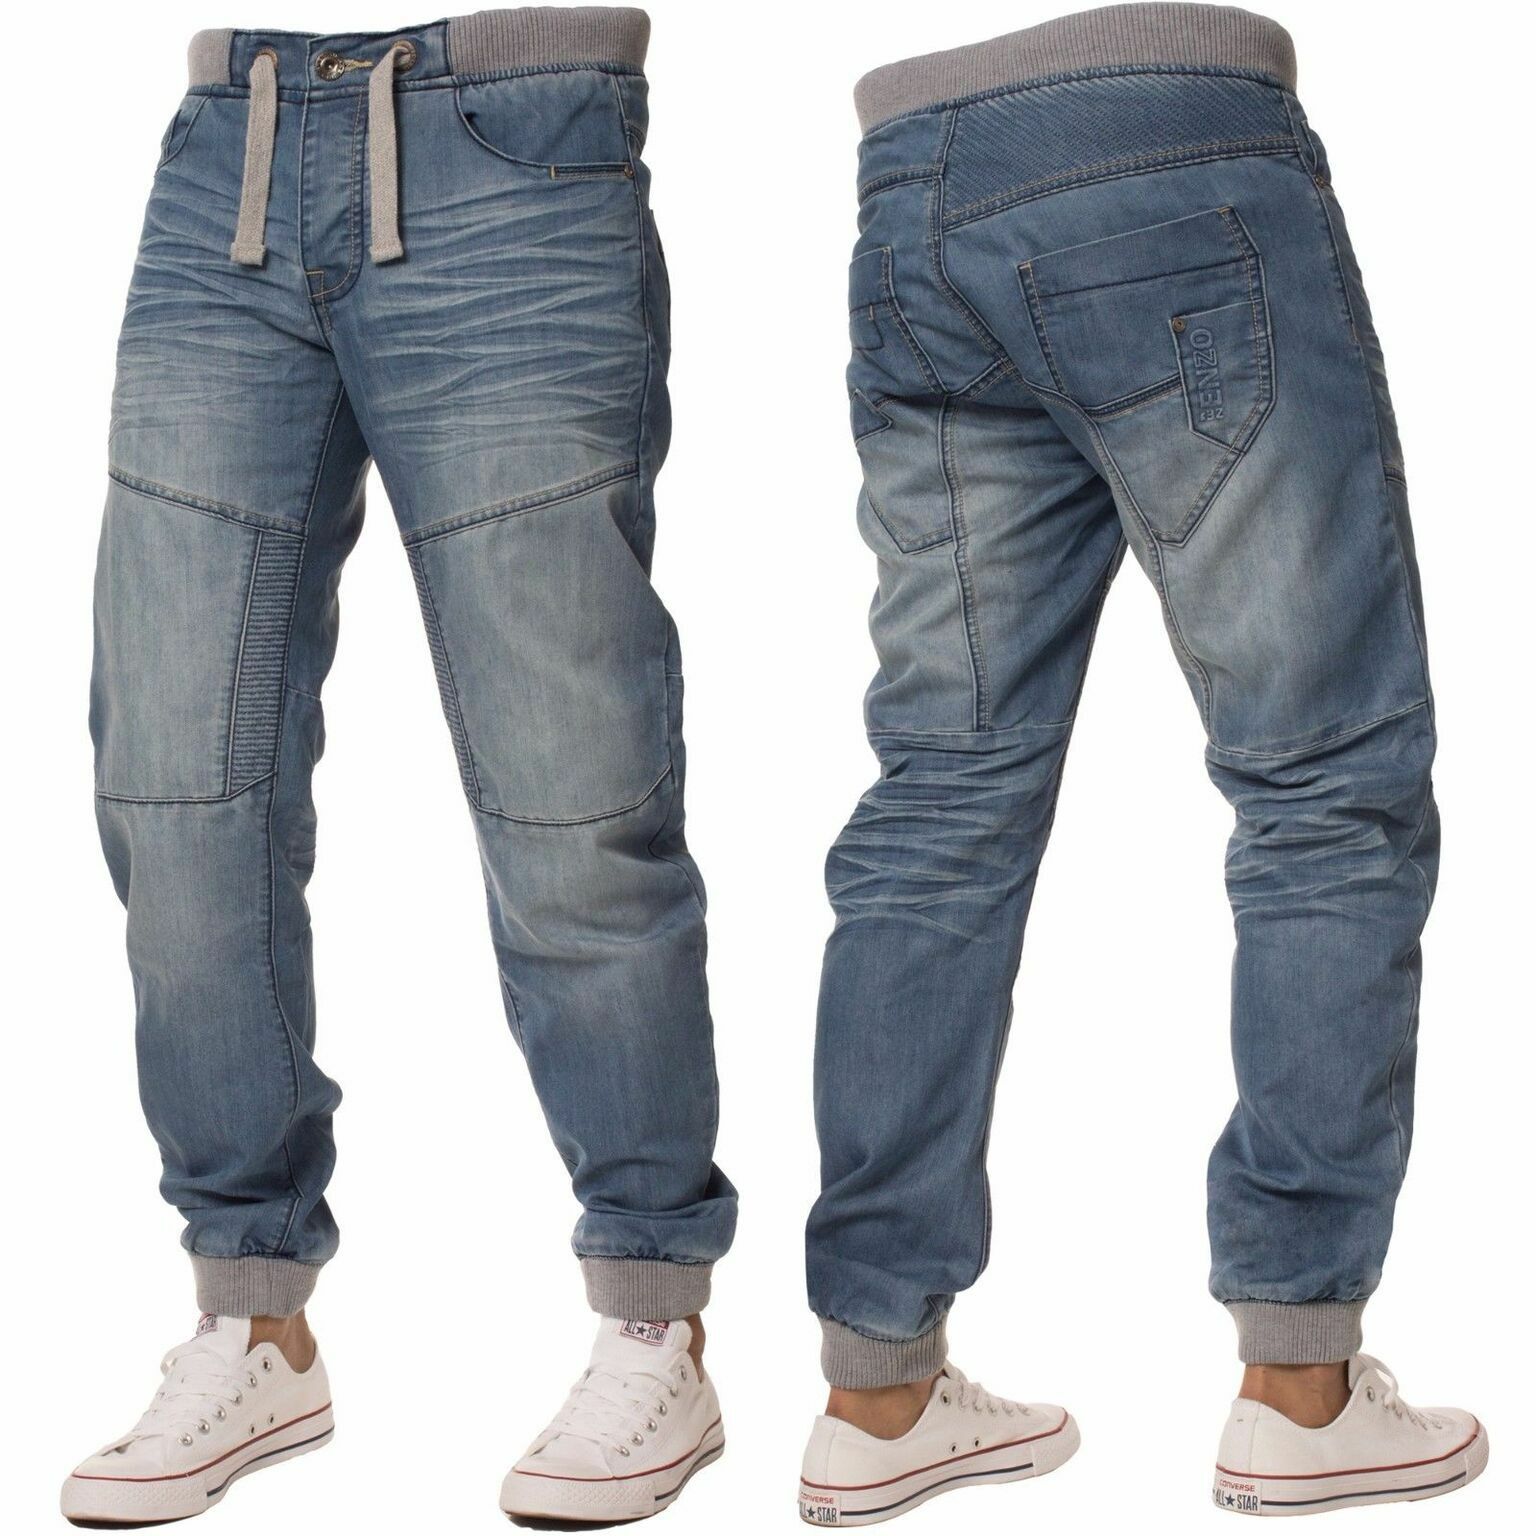 cuffed jeans converse